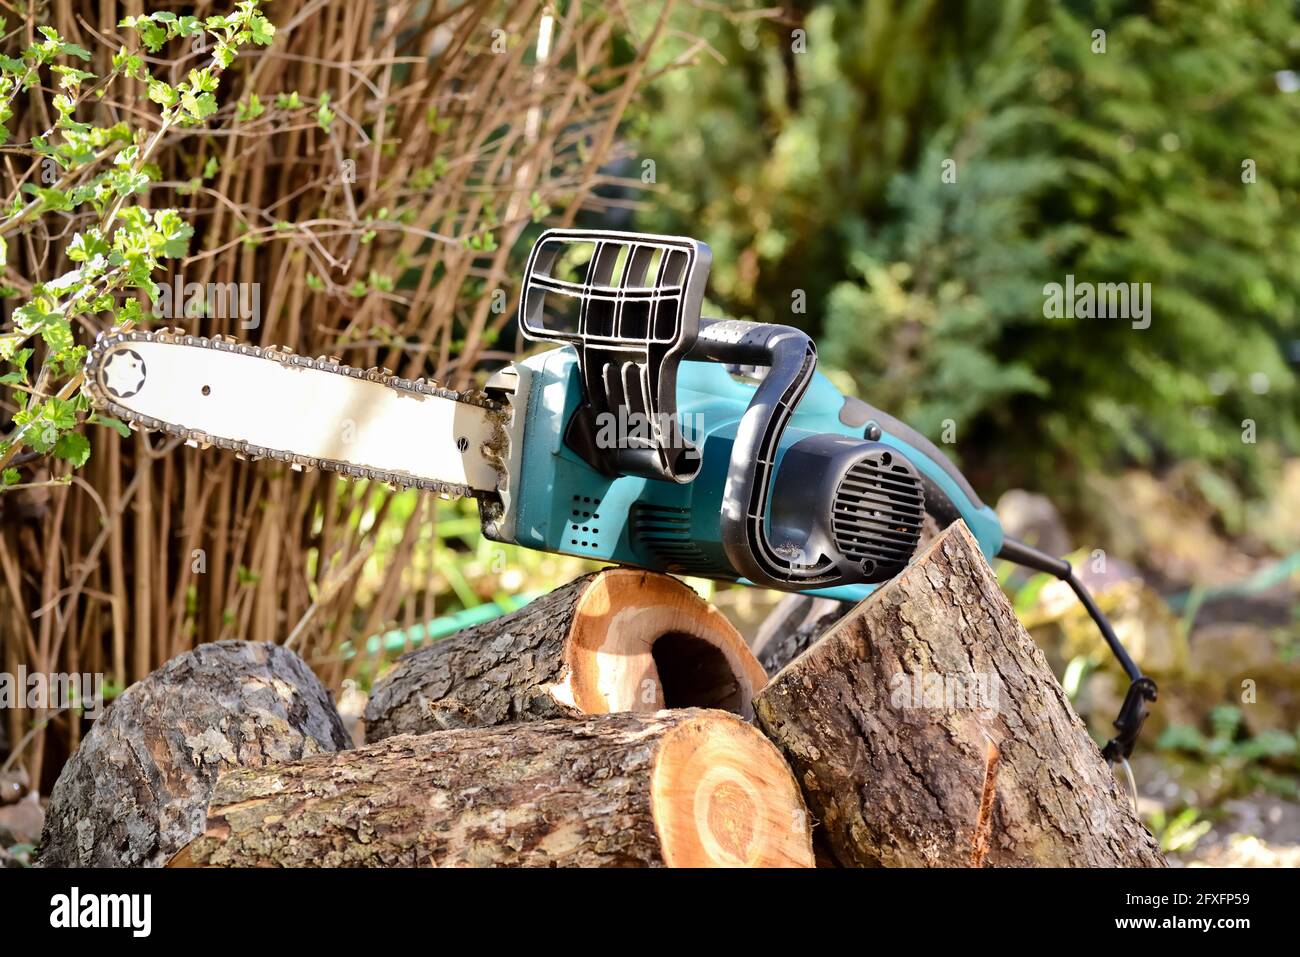 Elektrische Kettensäge und Schnittholz während der saisonalen Arbeiten im Garten und Schneiden von Bäumen für Brennholz. Stockfoto